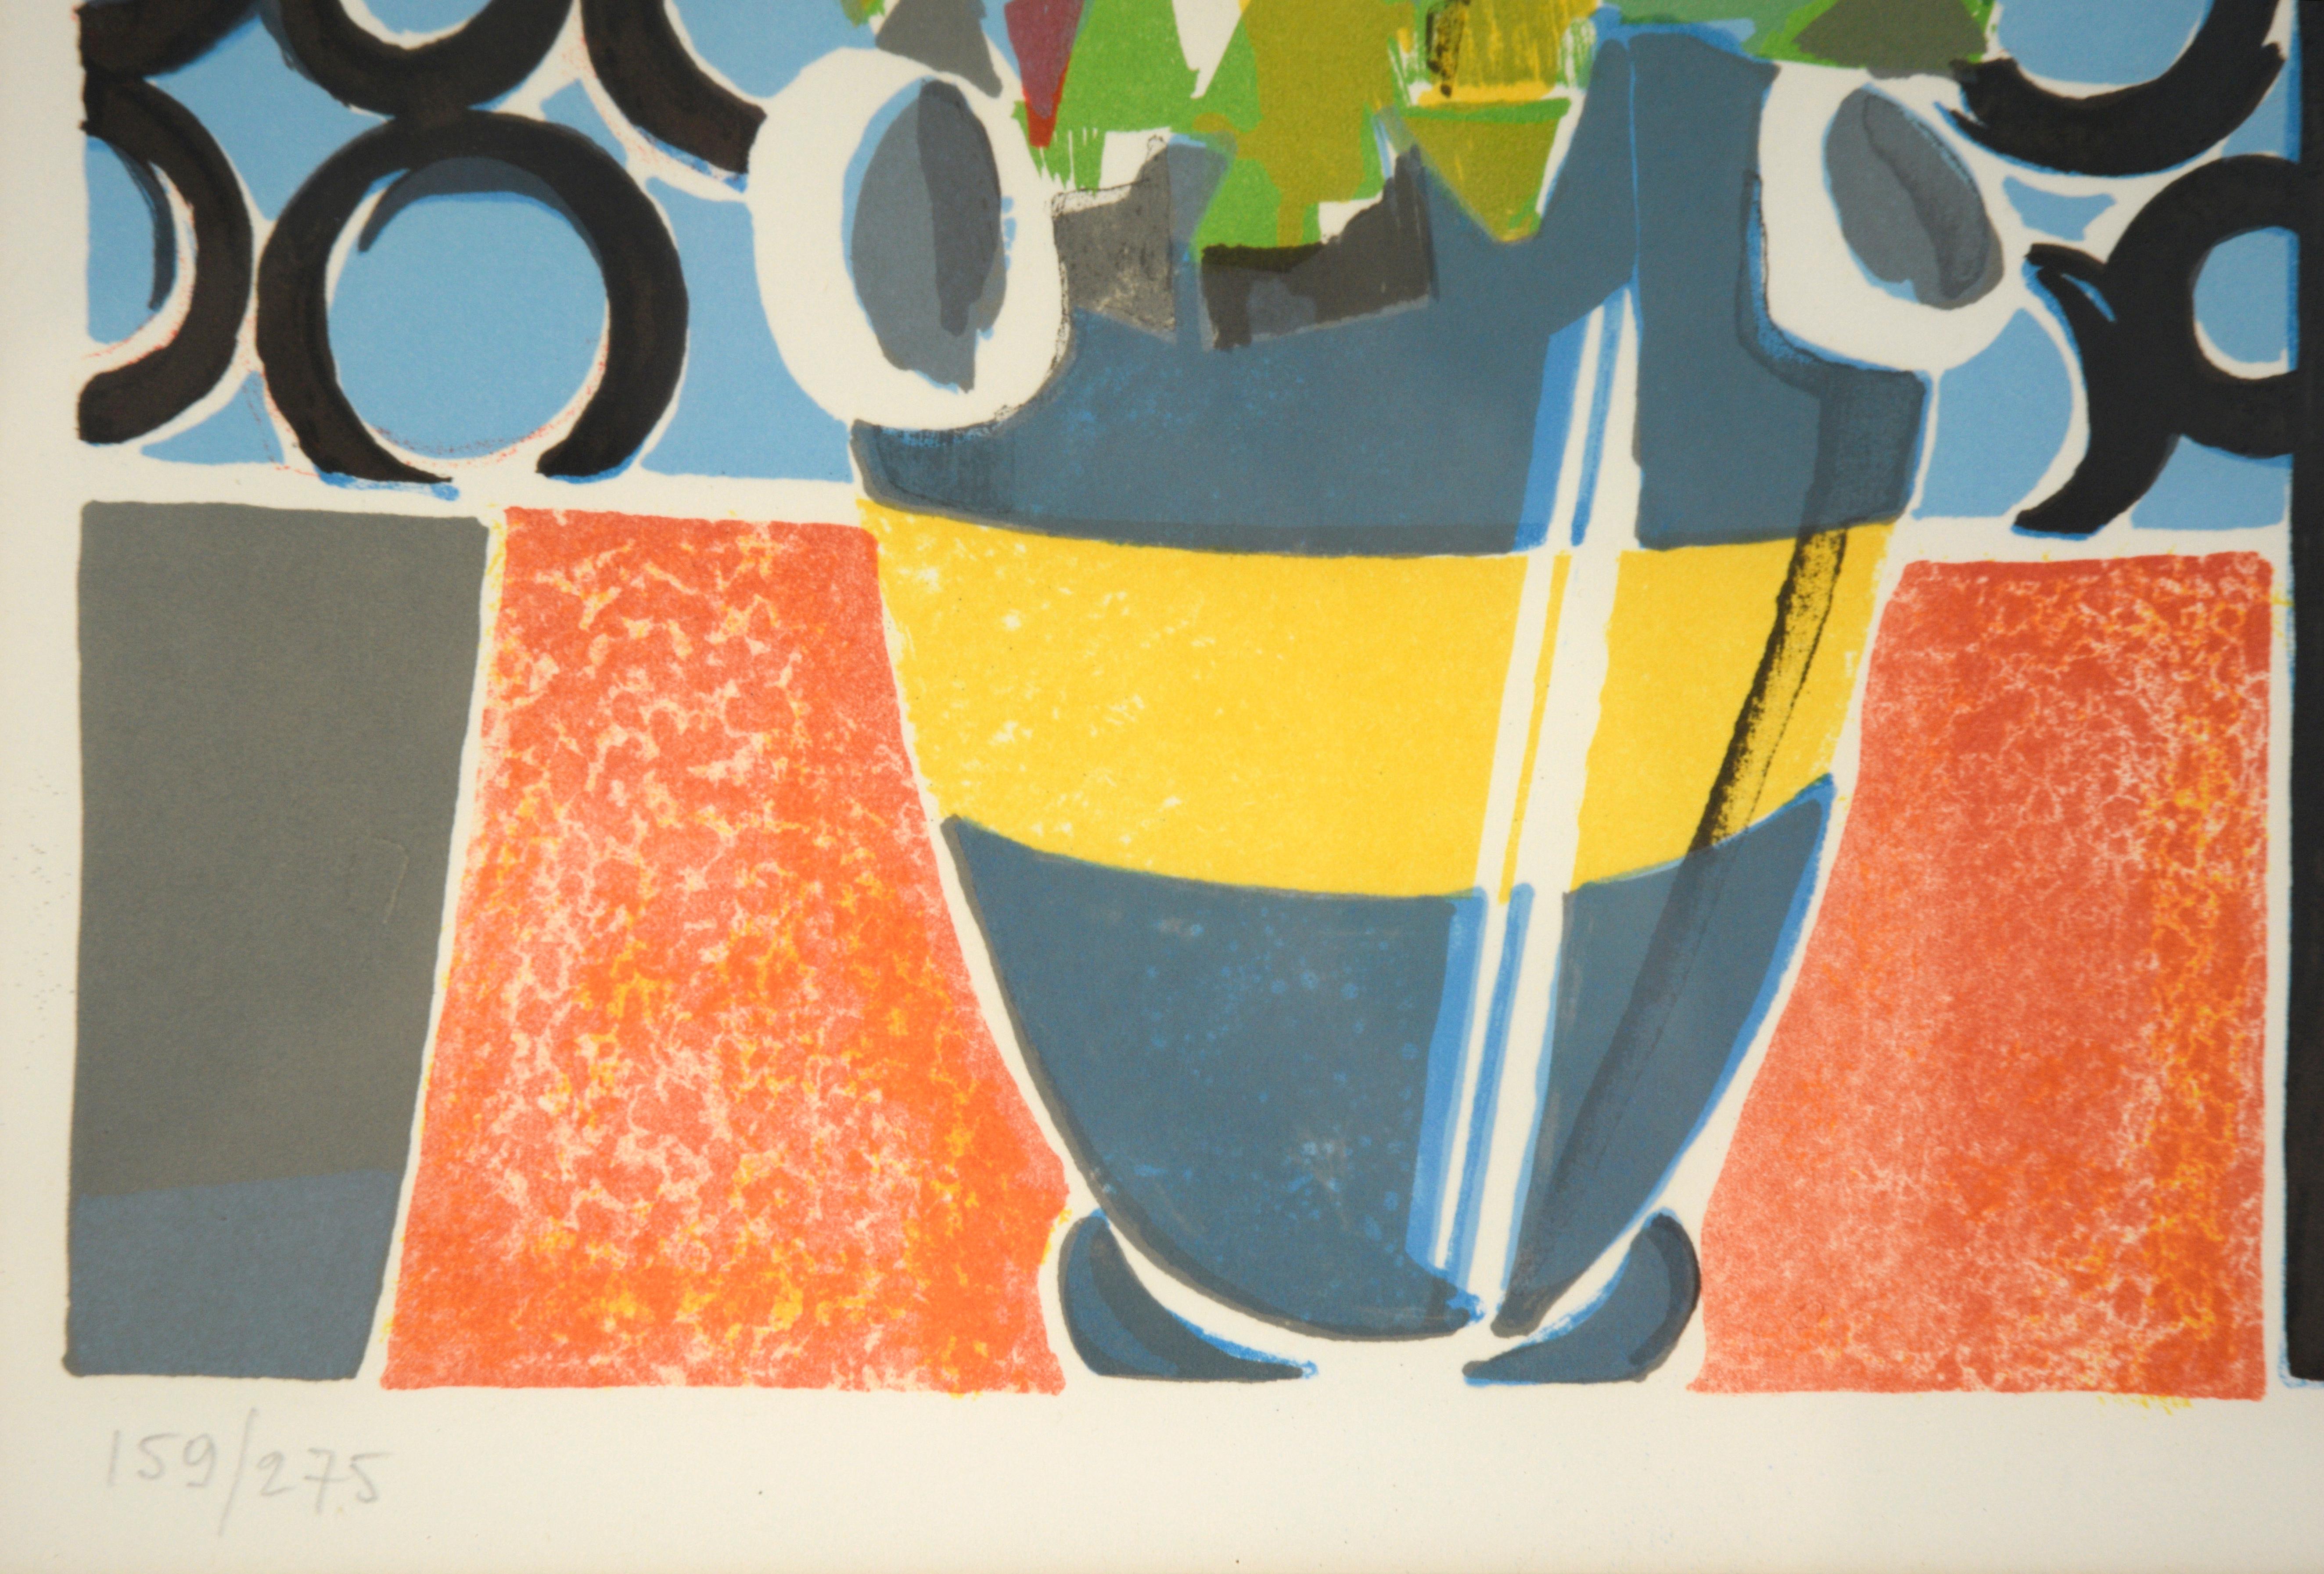 Lebendiges kubistisches Stillleben, eine handsignierte Lithografie in limitierter Auflage von Fausto Maria Casotti (auch bekannt als Cauri) (Italiener, geb. 1924). Kräftige Farben und blockhafte Formen kennzeichnen diese lustige und charmante Szene,